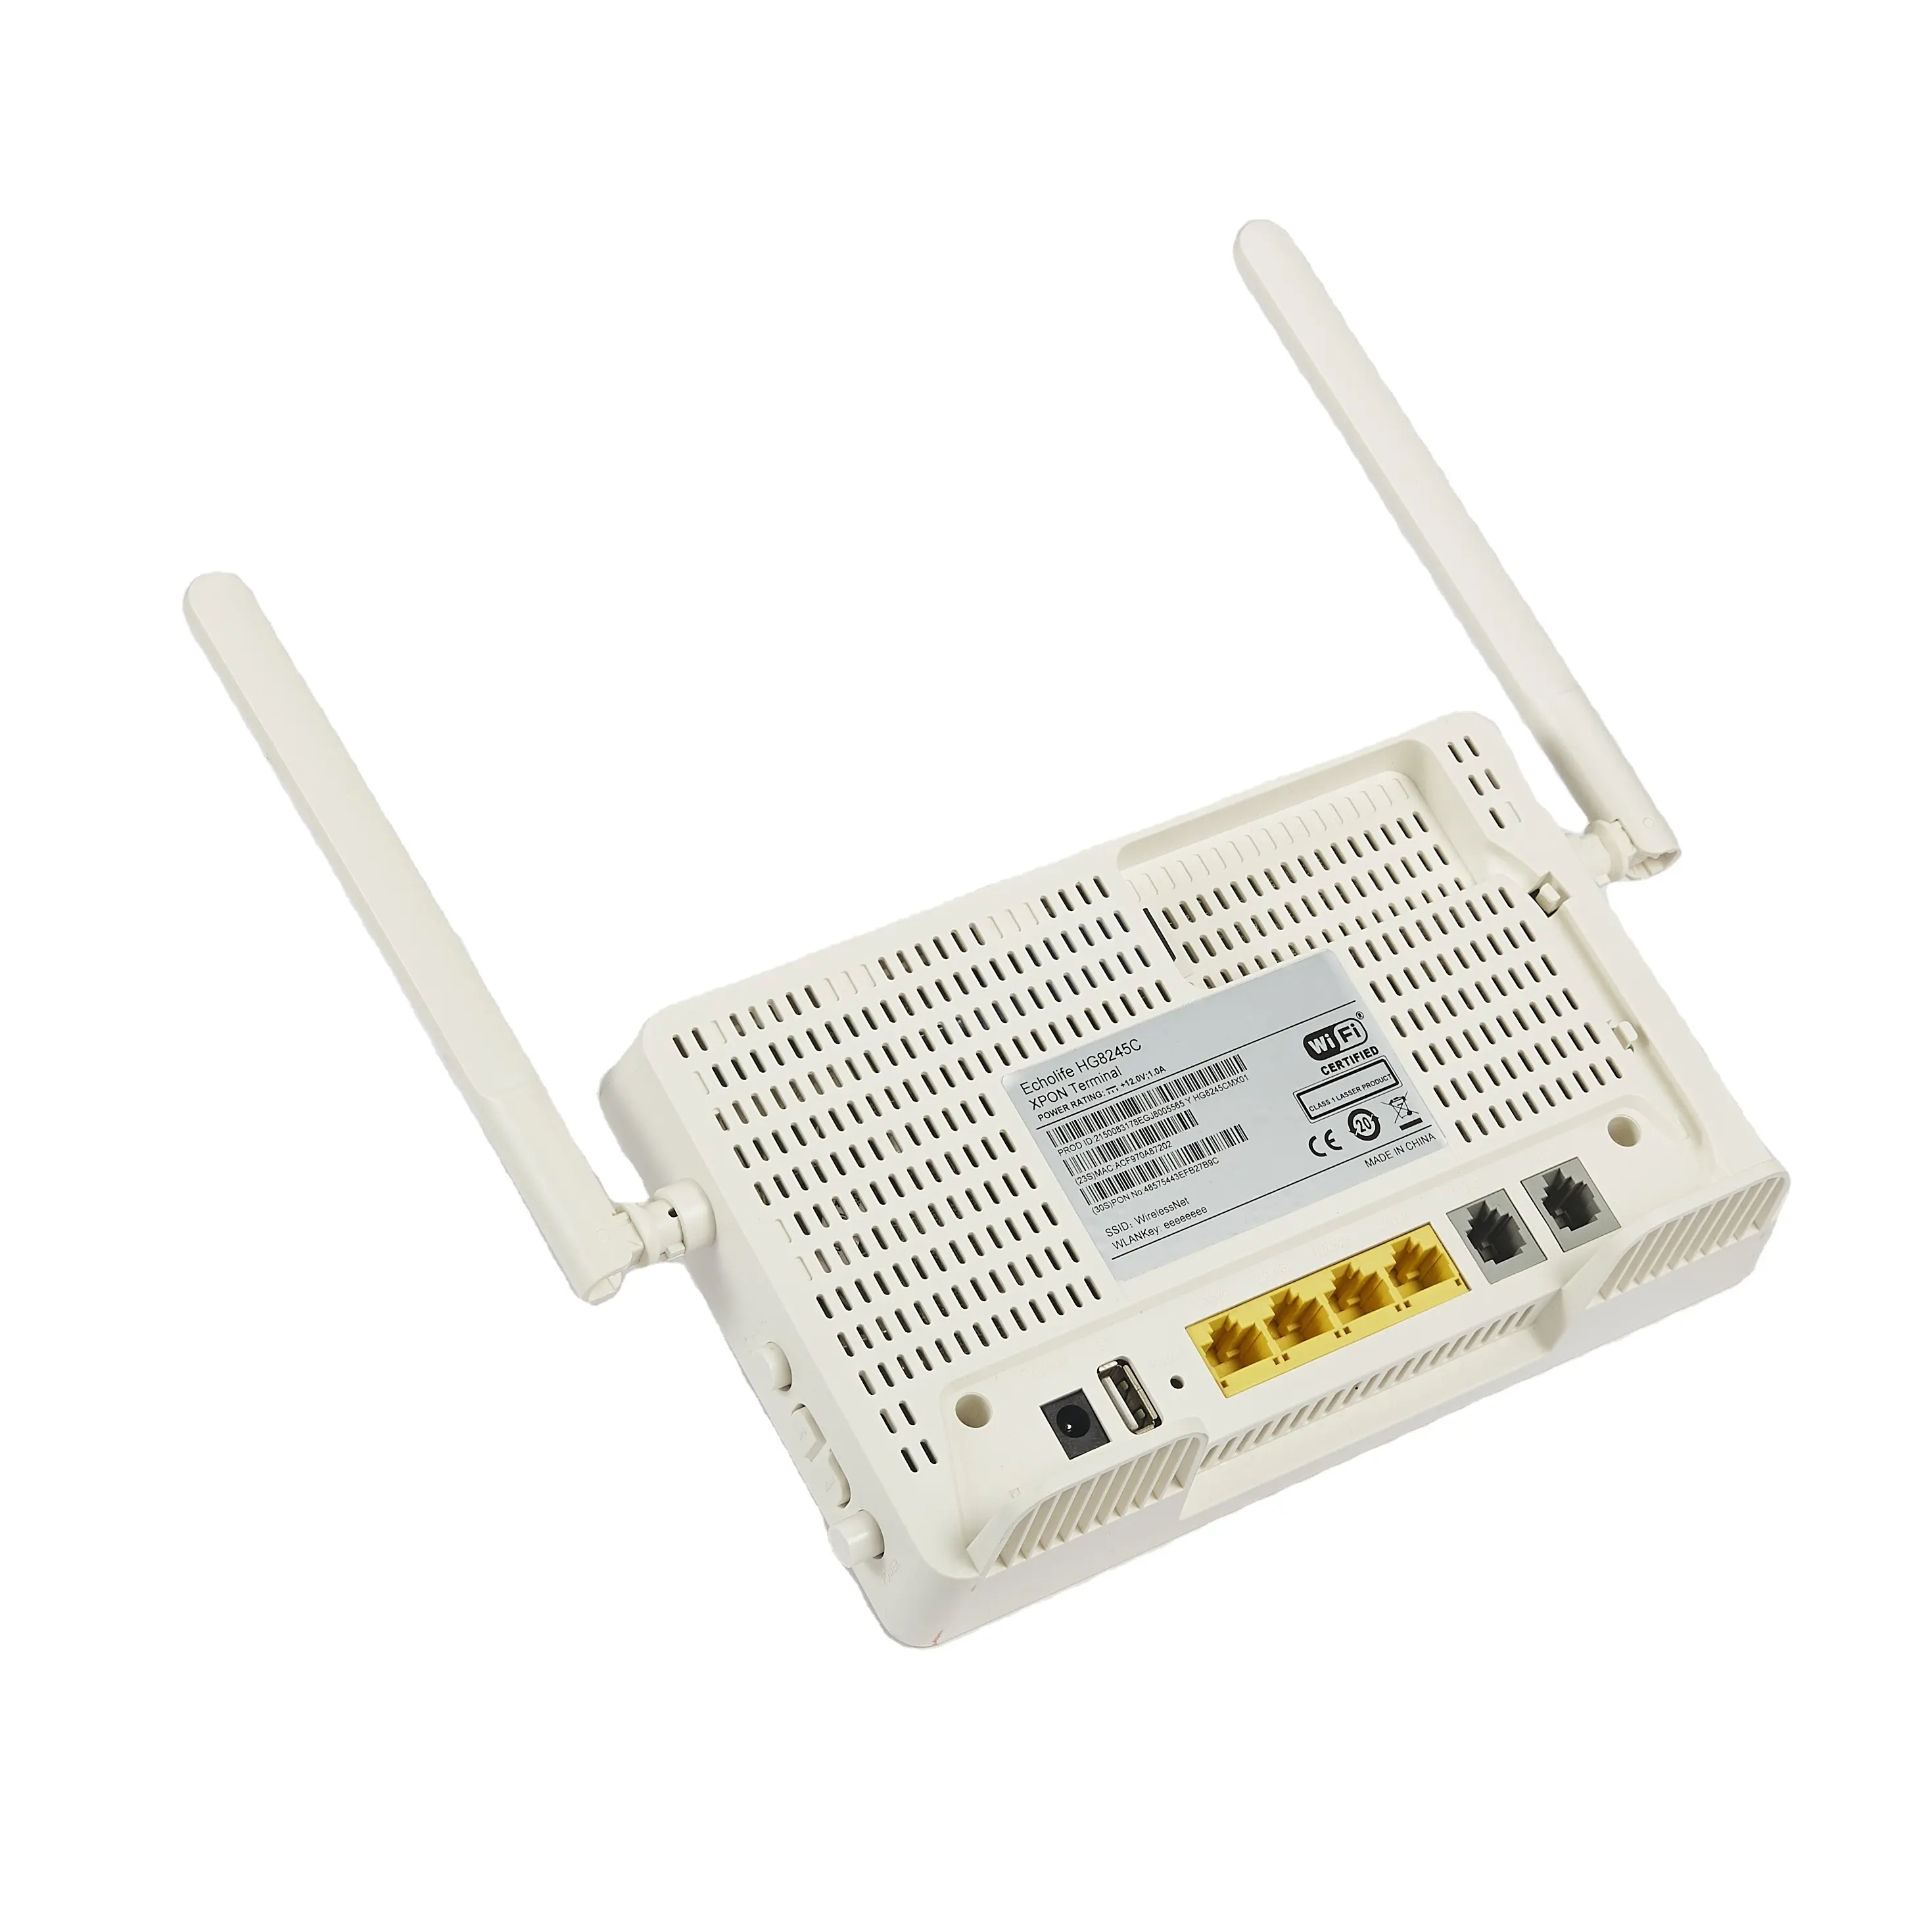 Hg8245C, kaliteli, iki tencere ve 4Fe Ethernet portu WiFi yönlendiriciler sağlar